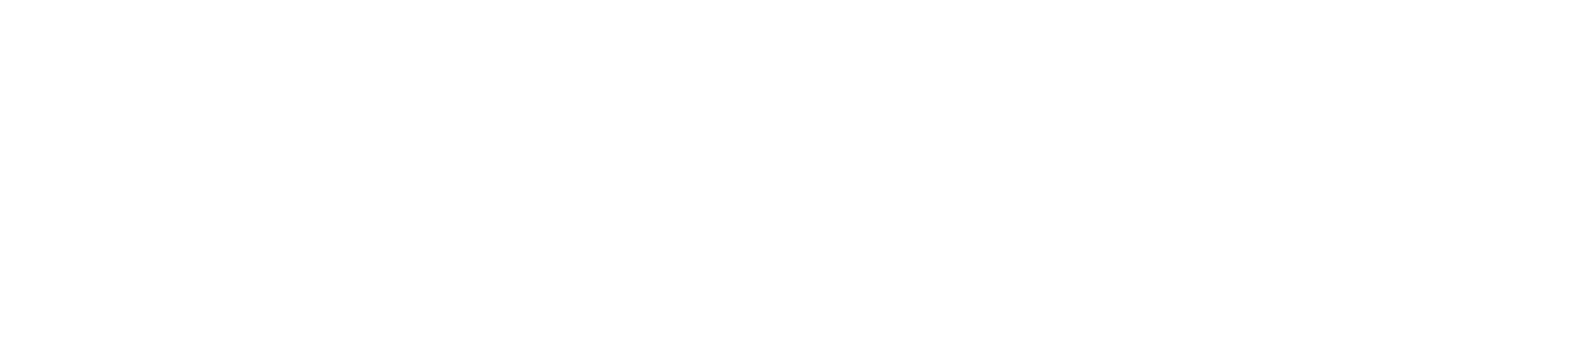 easyJet logo grand pour les fonds sombres (PNG transparent)